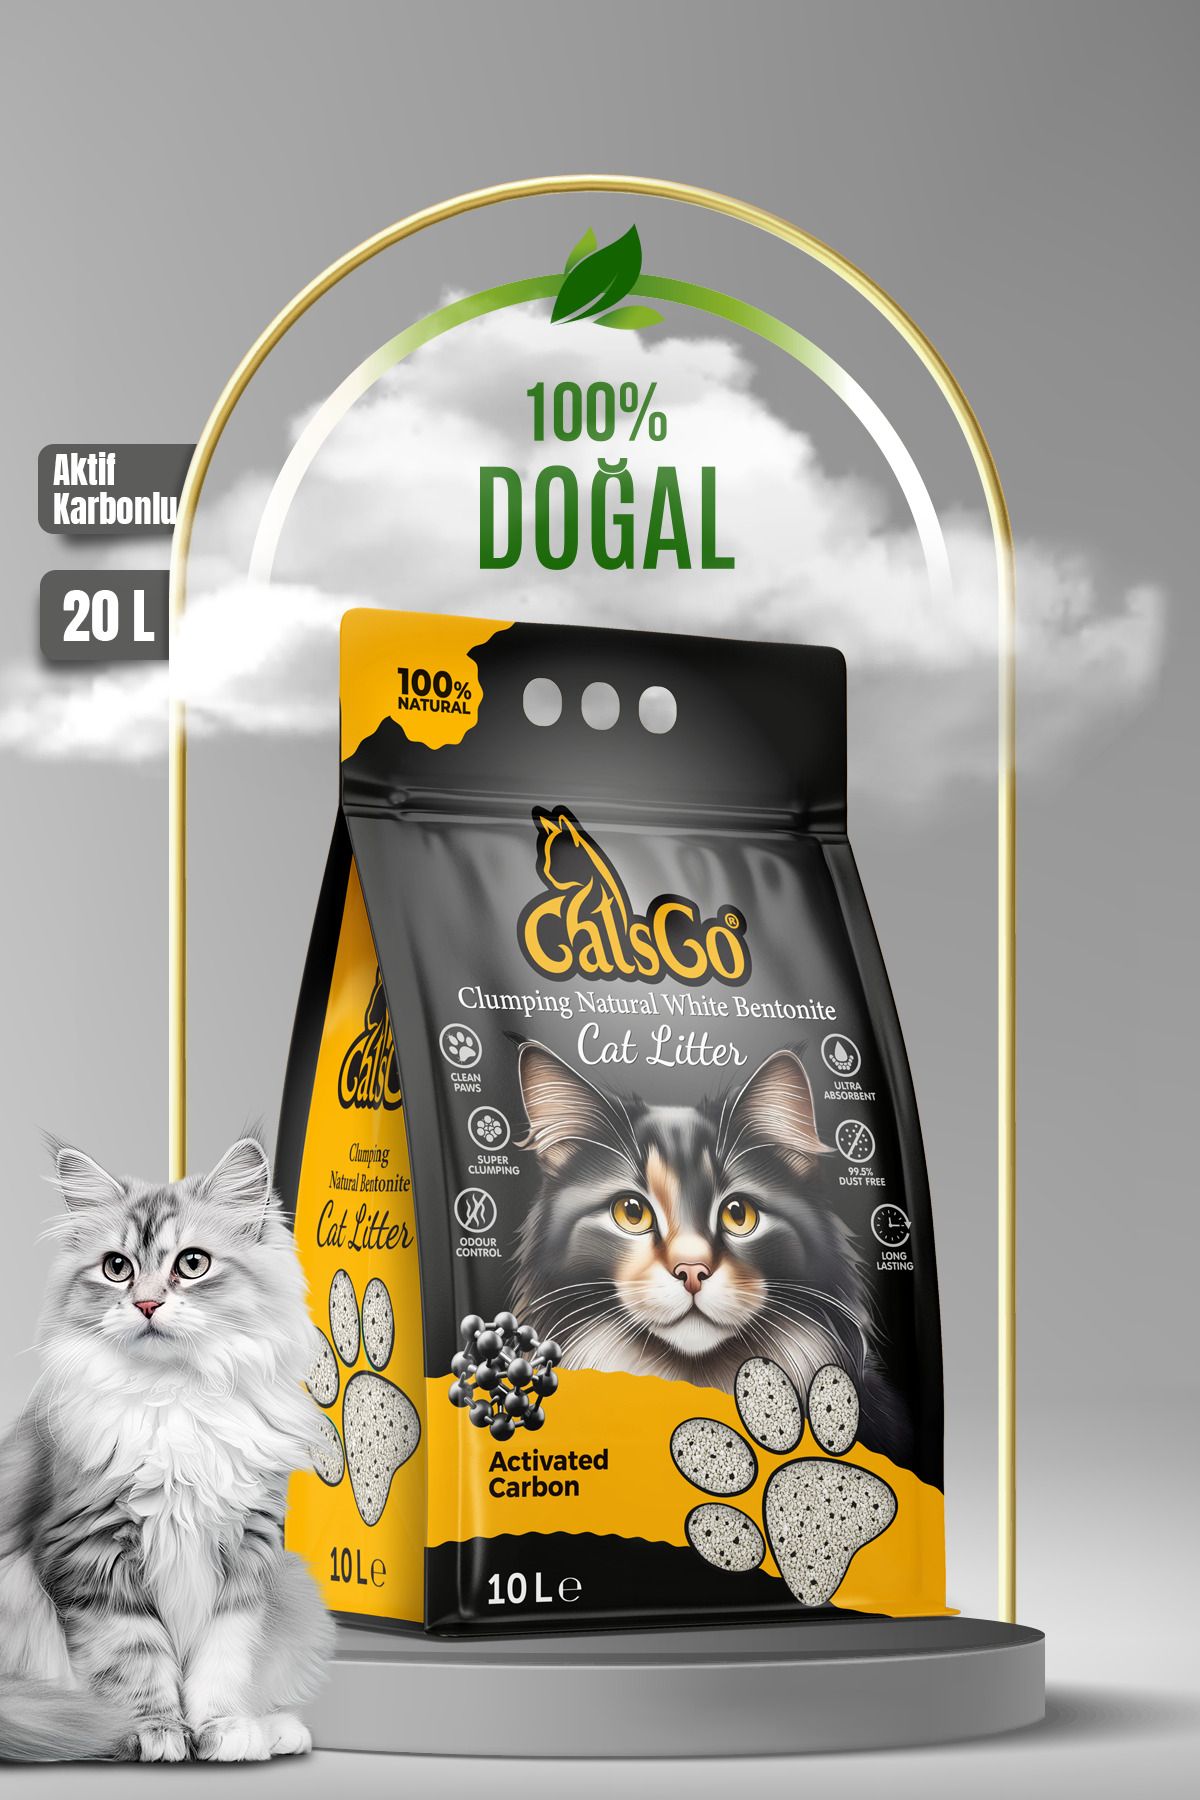 CatsGo Cat’s Go Aktif Karbonlu Premium Organik Kedi Kumu 10 Lt 2 Adet